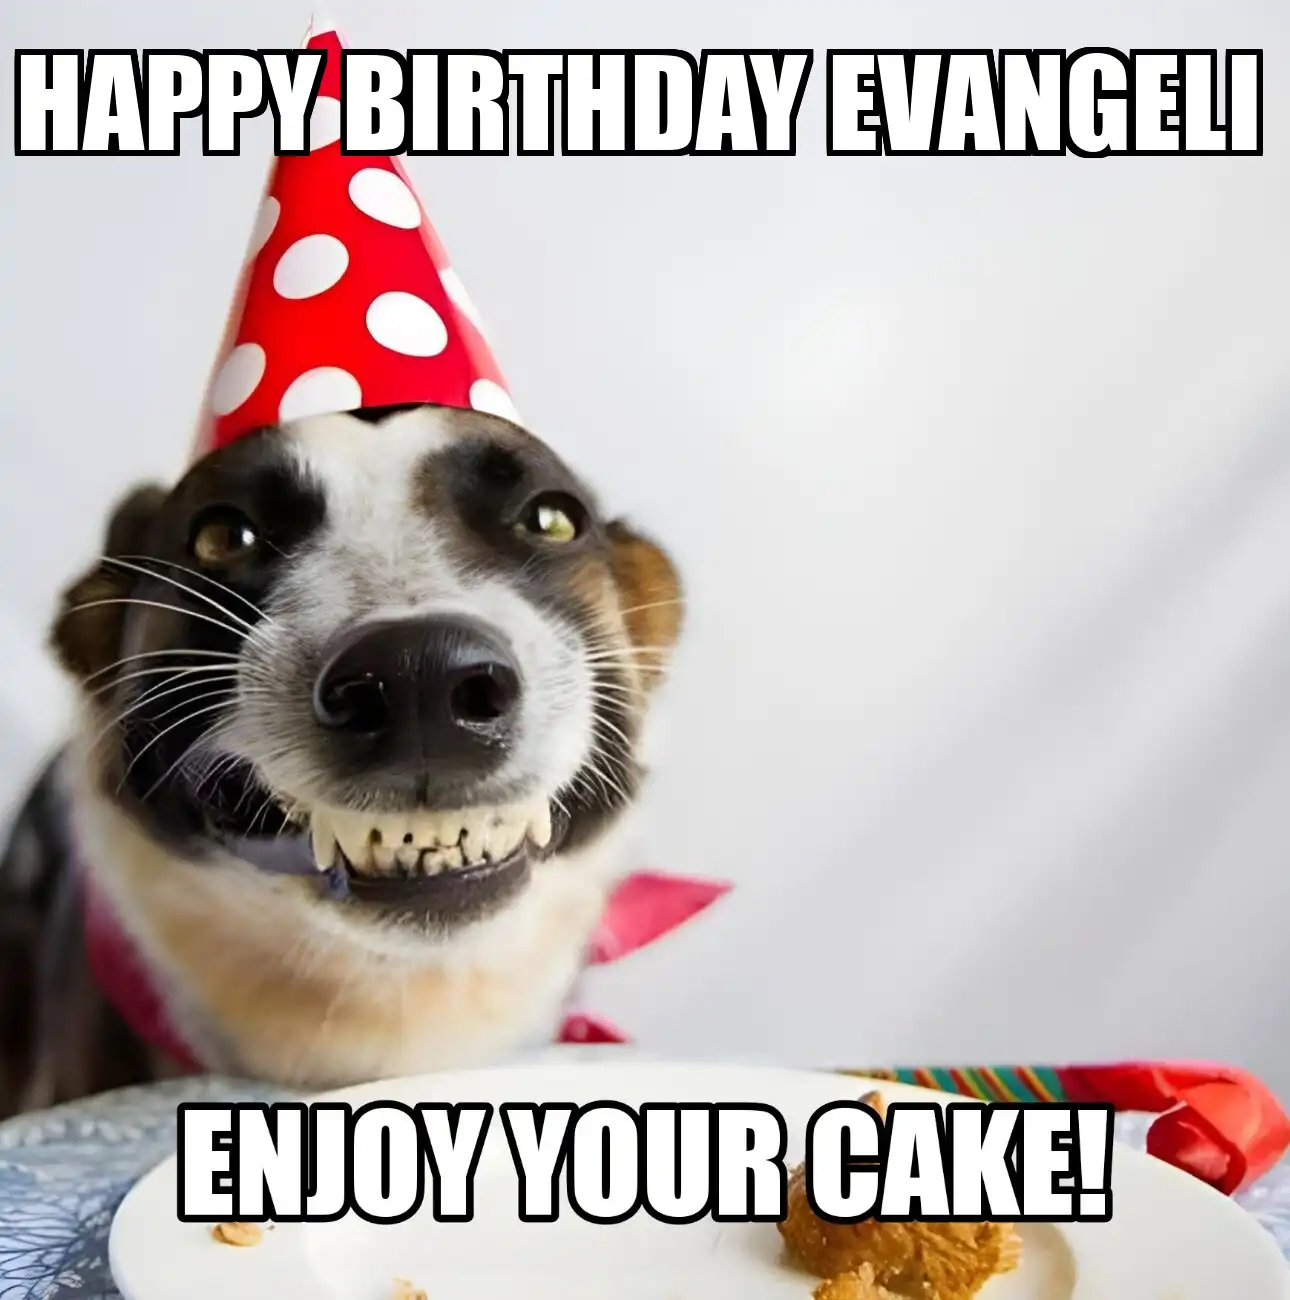 Happy Birthday Evangeli Enjoy Your Cake Dog Meme